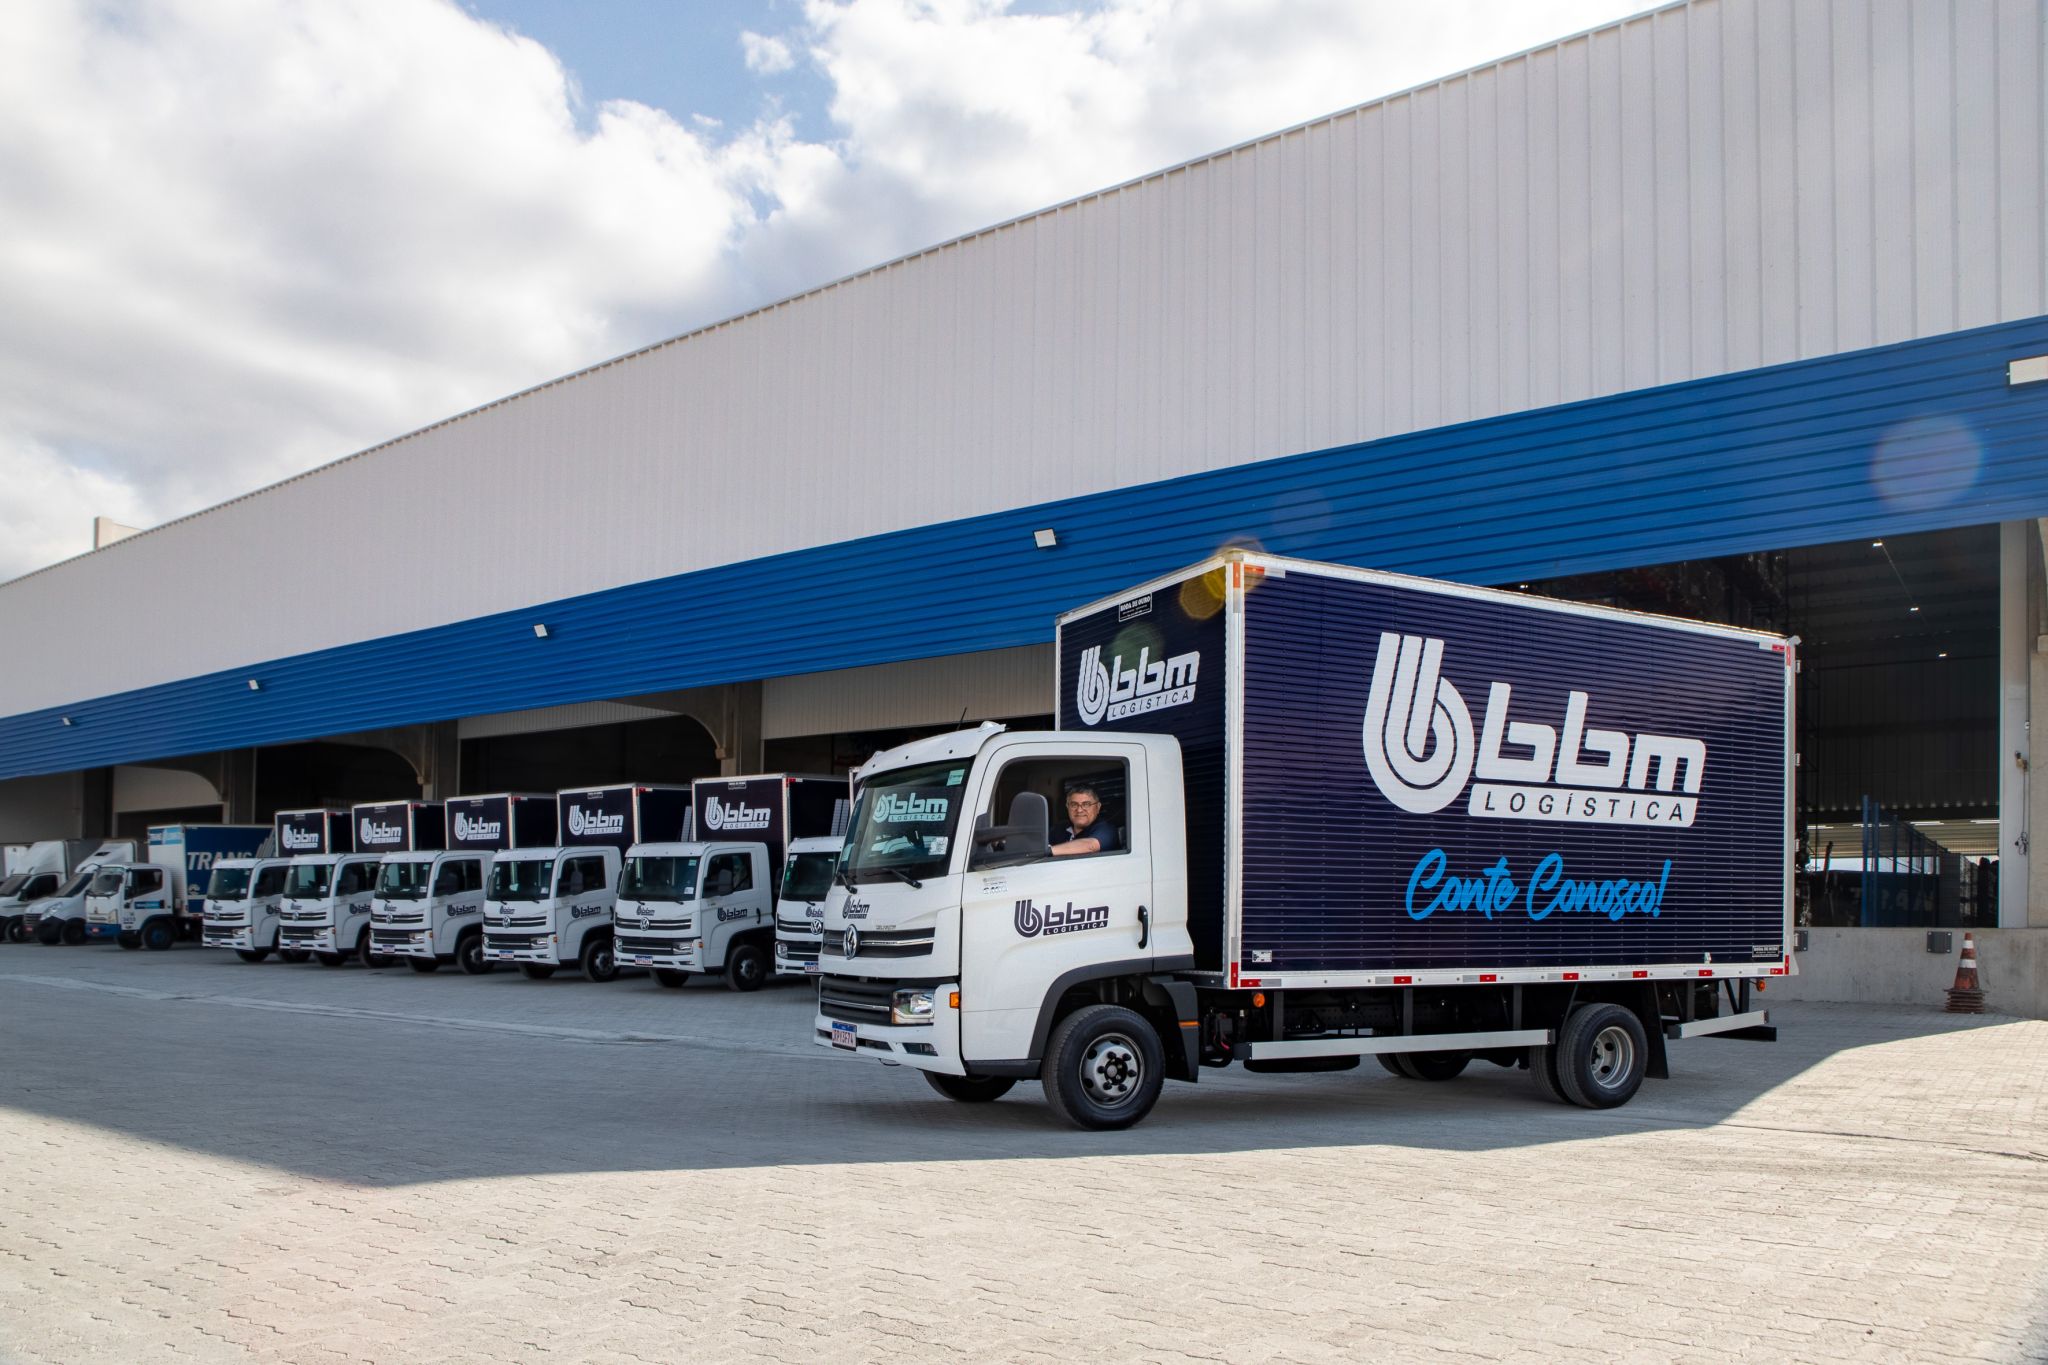  BBM Logística anuncia expansão na região norte e passa a cobrir todo o território brasileiro